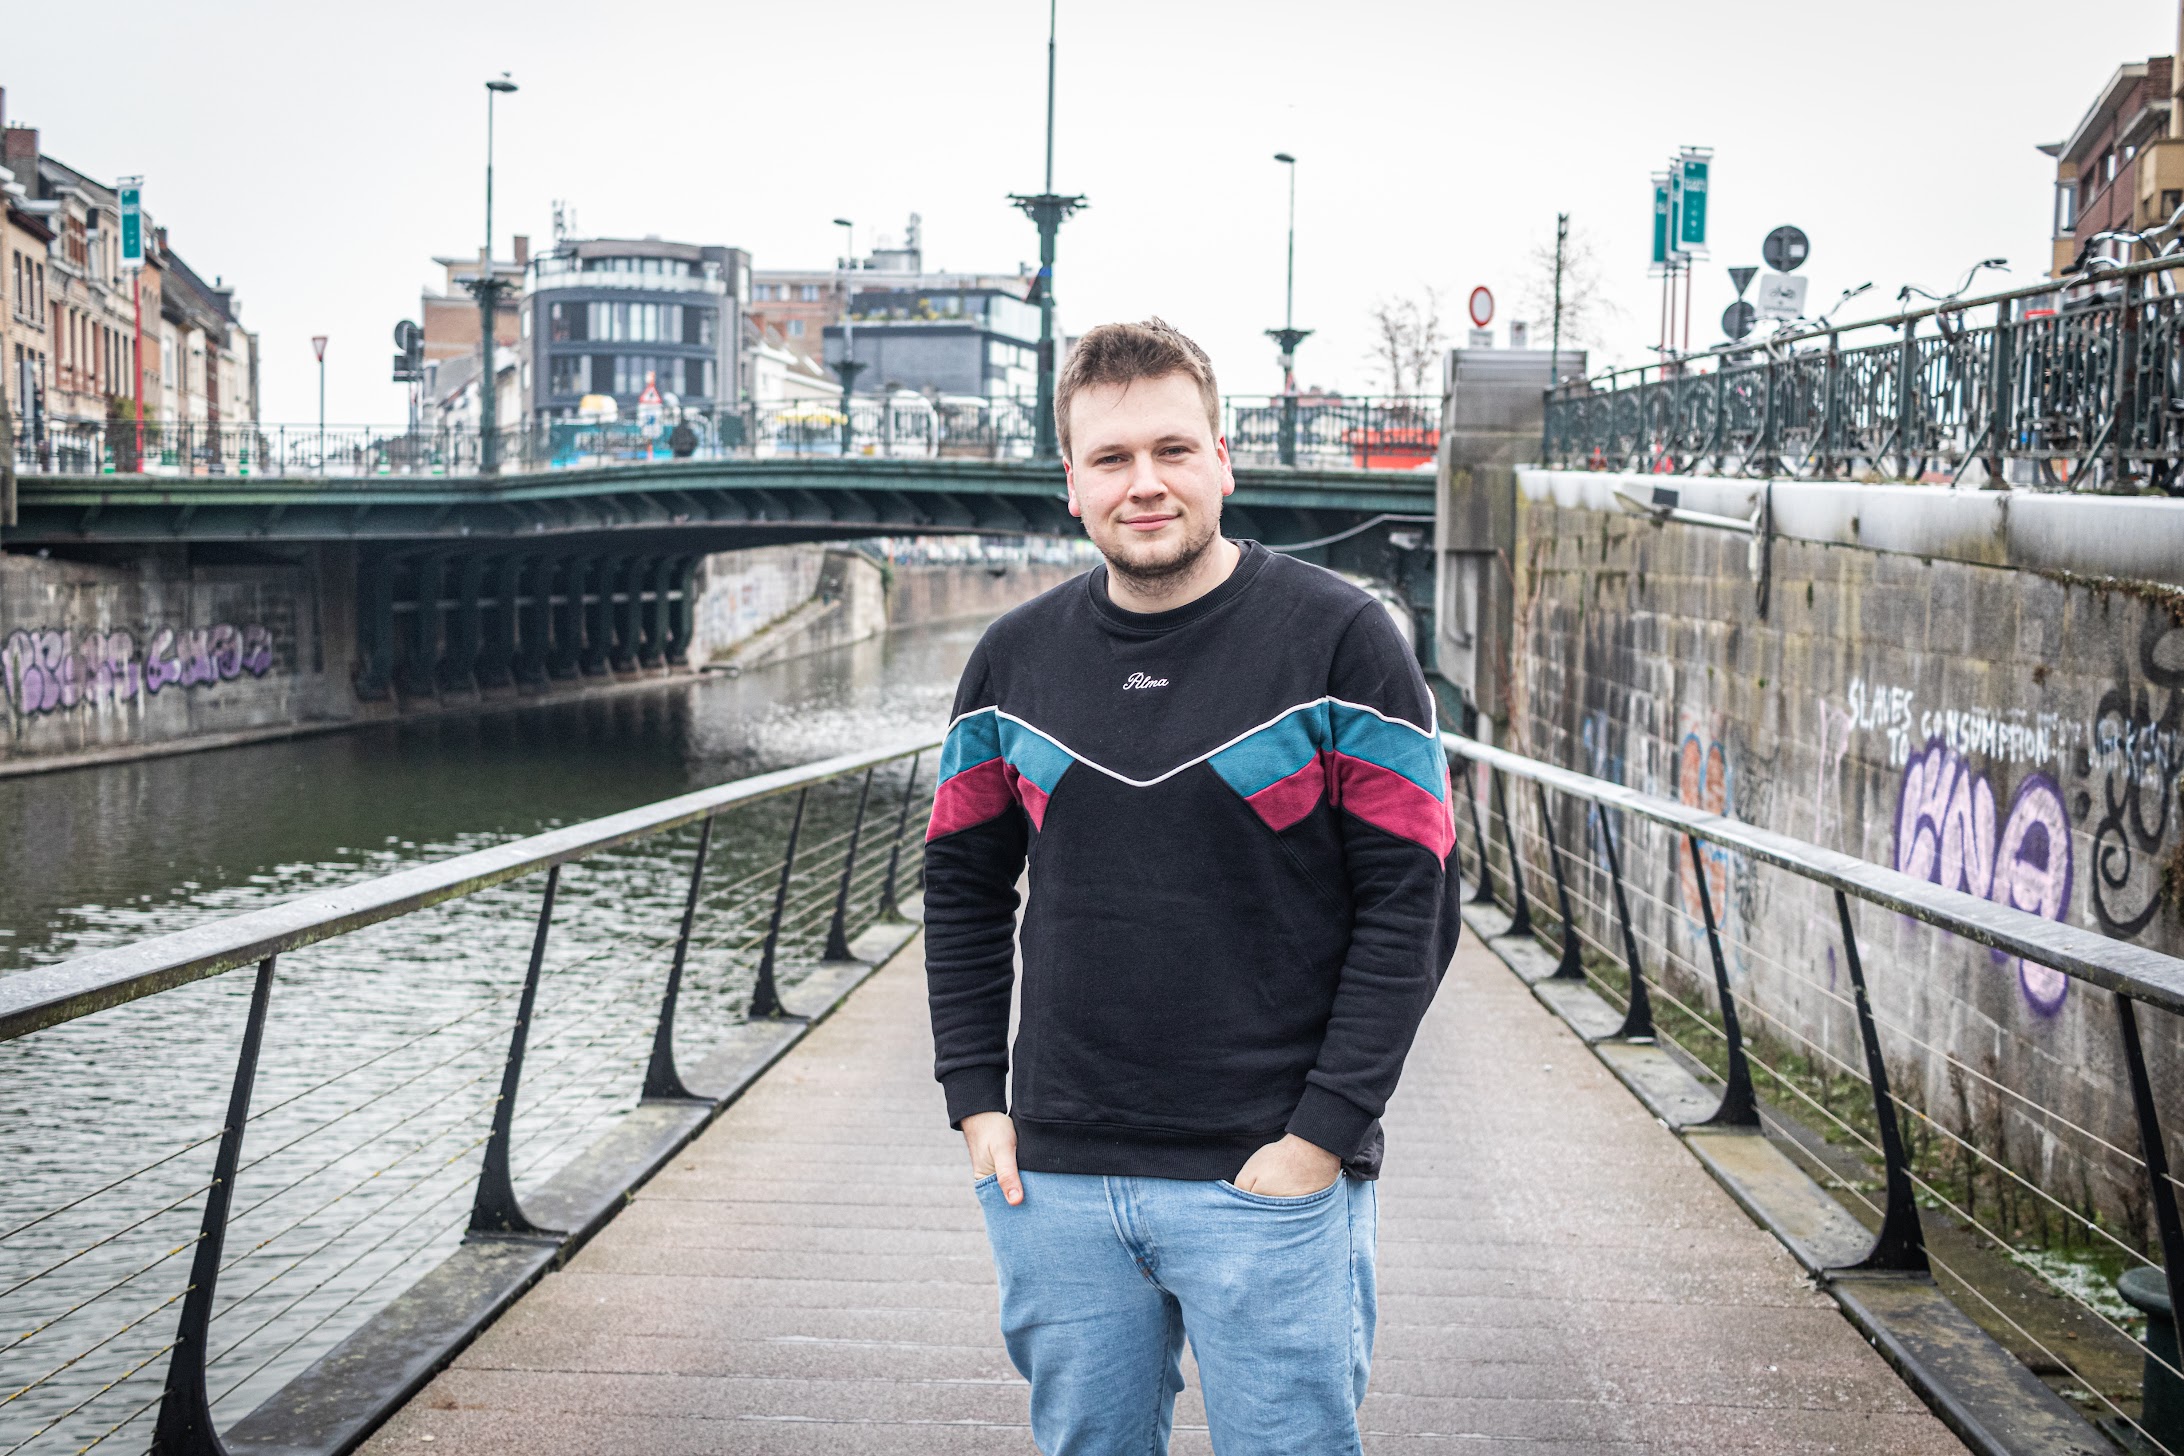 PVDA kiest met Onno Vandewalle (27) voor verjonging in Vlaams parlement